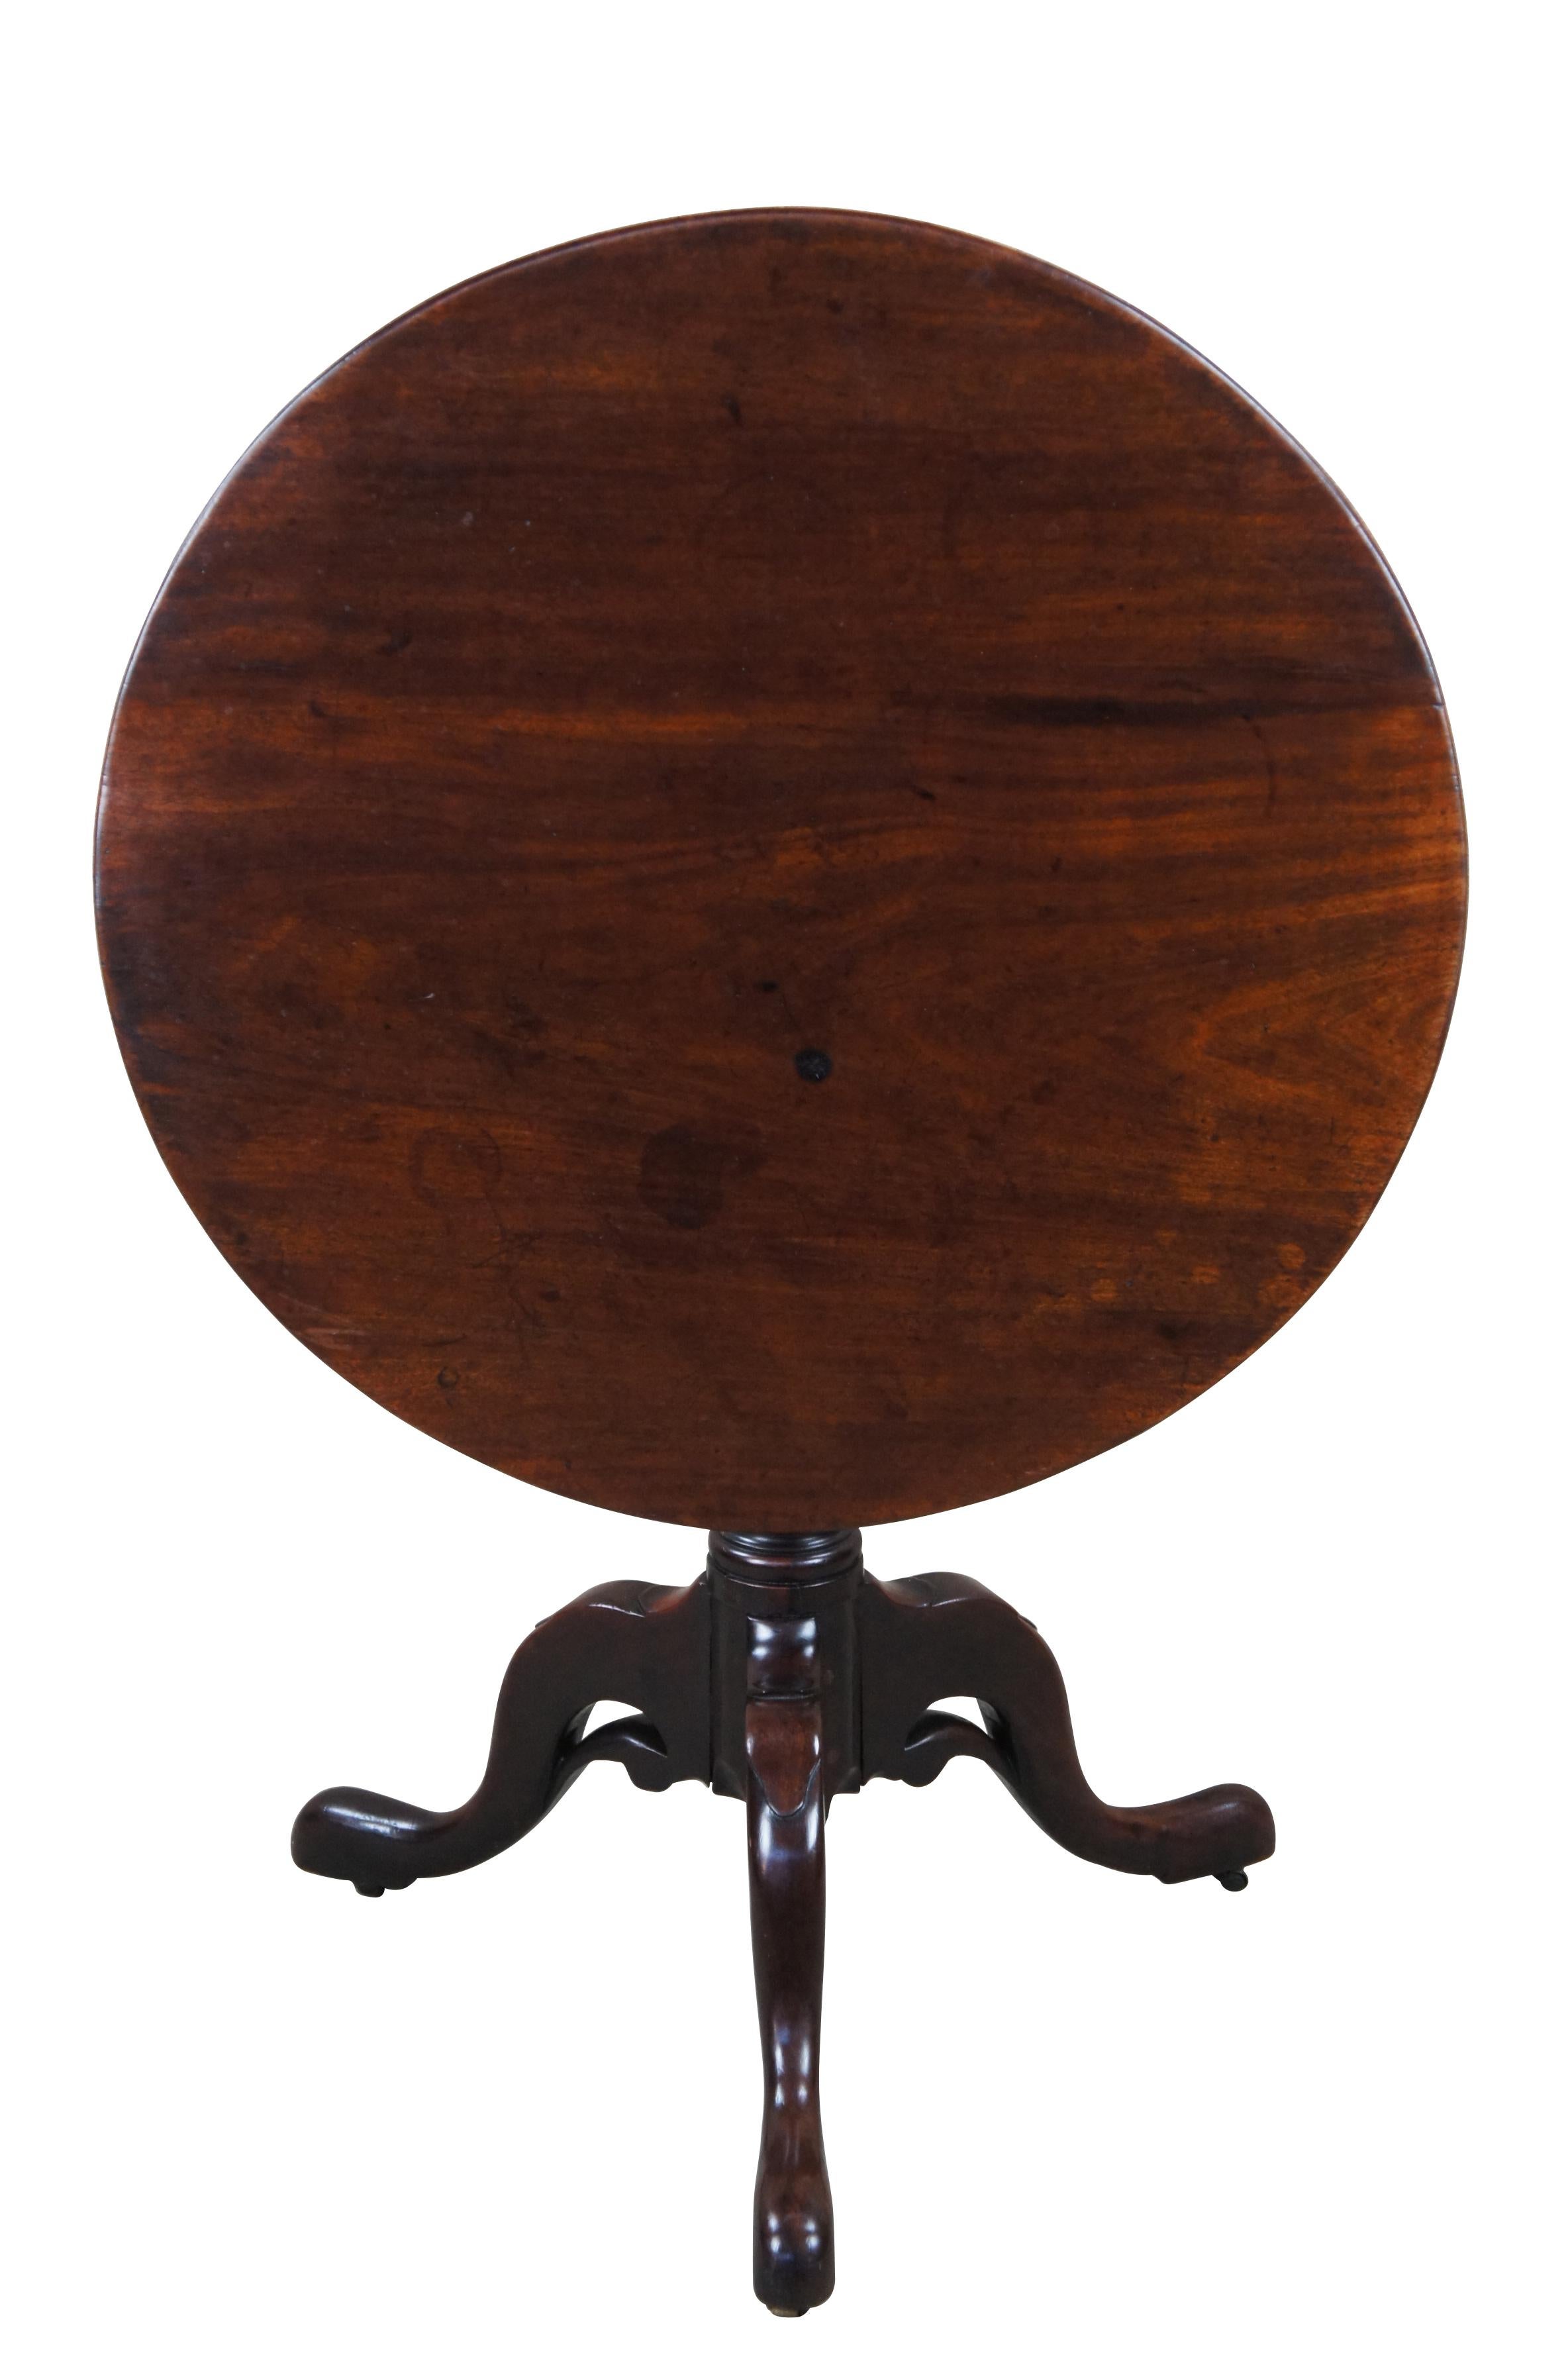 Rare table à thé anglaise antique du 18e siècle à plateau basculant et à piédestal en forme de cage à oiseaux.  Fabriquée en acajou, elle se caractérise par un plateau rond et incliné soutenu par une base à trois pieds avec un accent unique percé